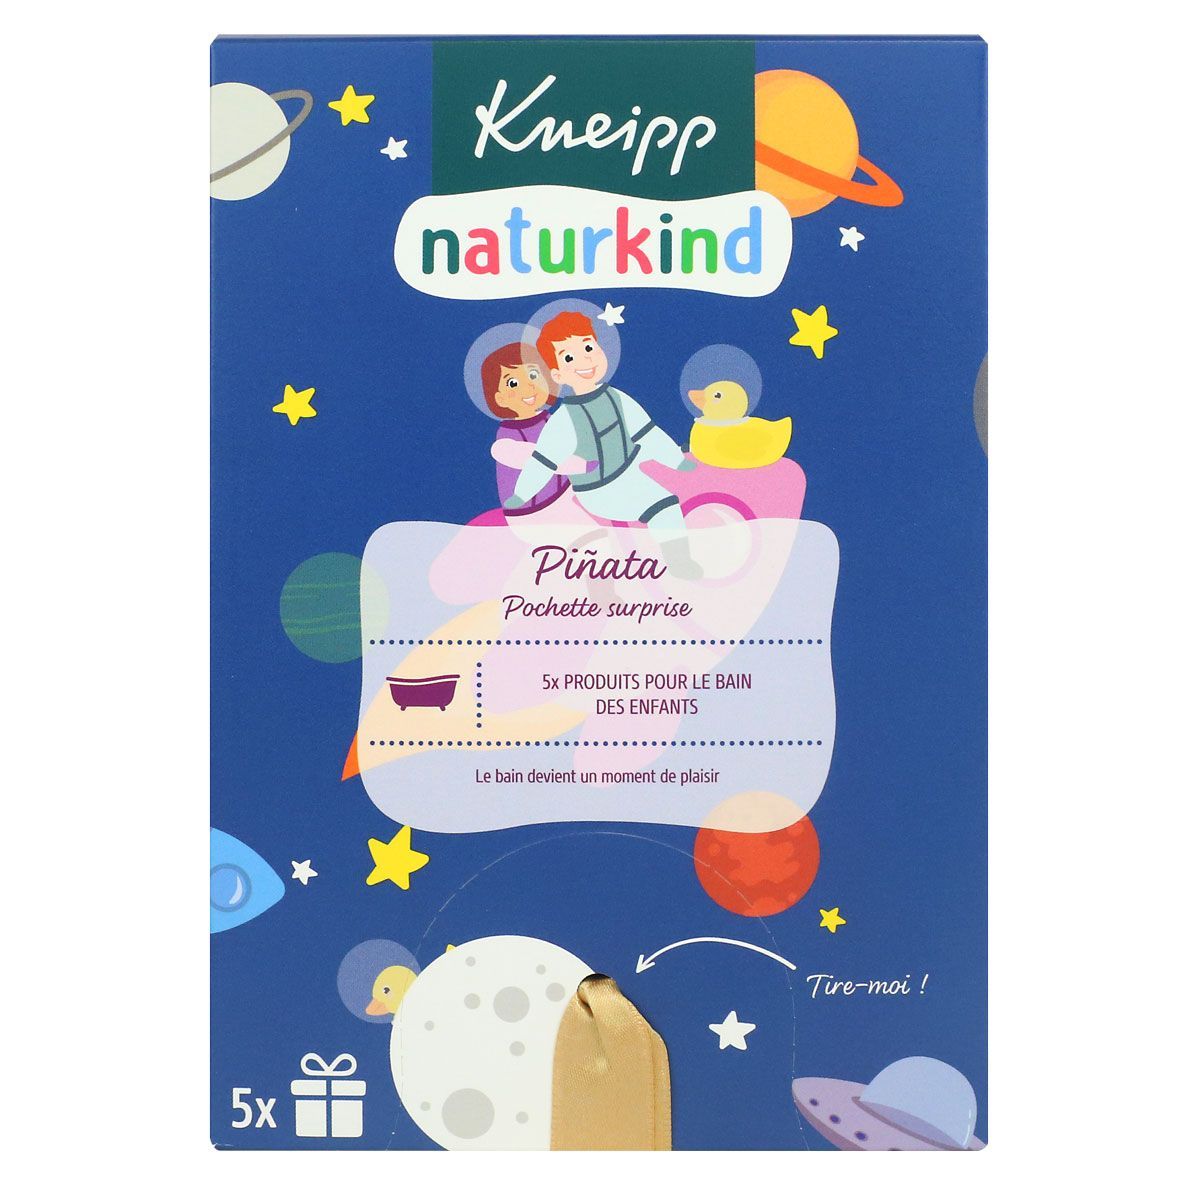 Coffret pour enfant de la marque Kneipp composé d'une mousse pour le bain.